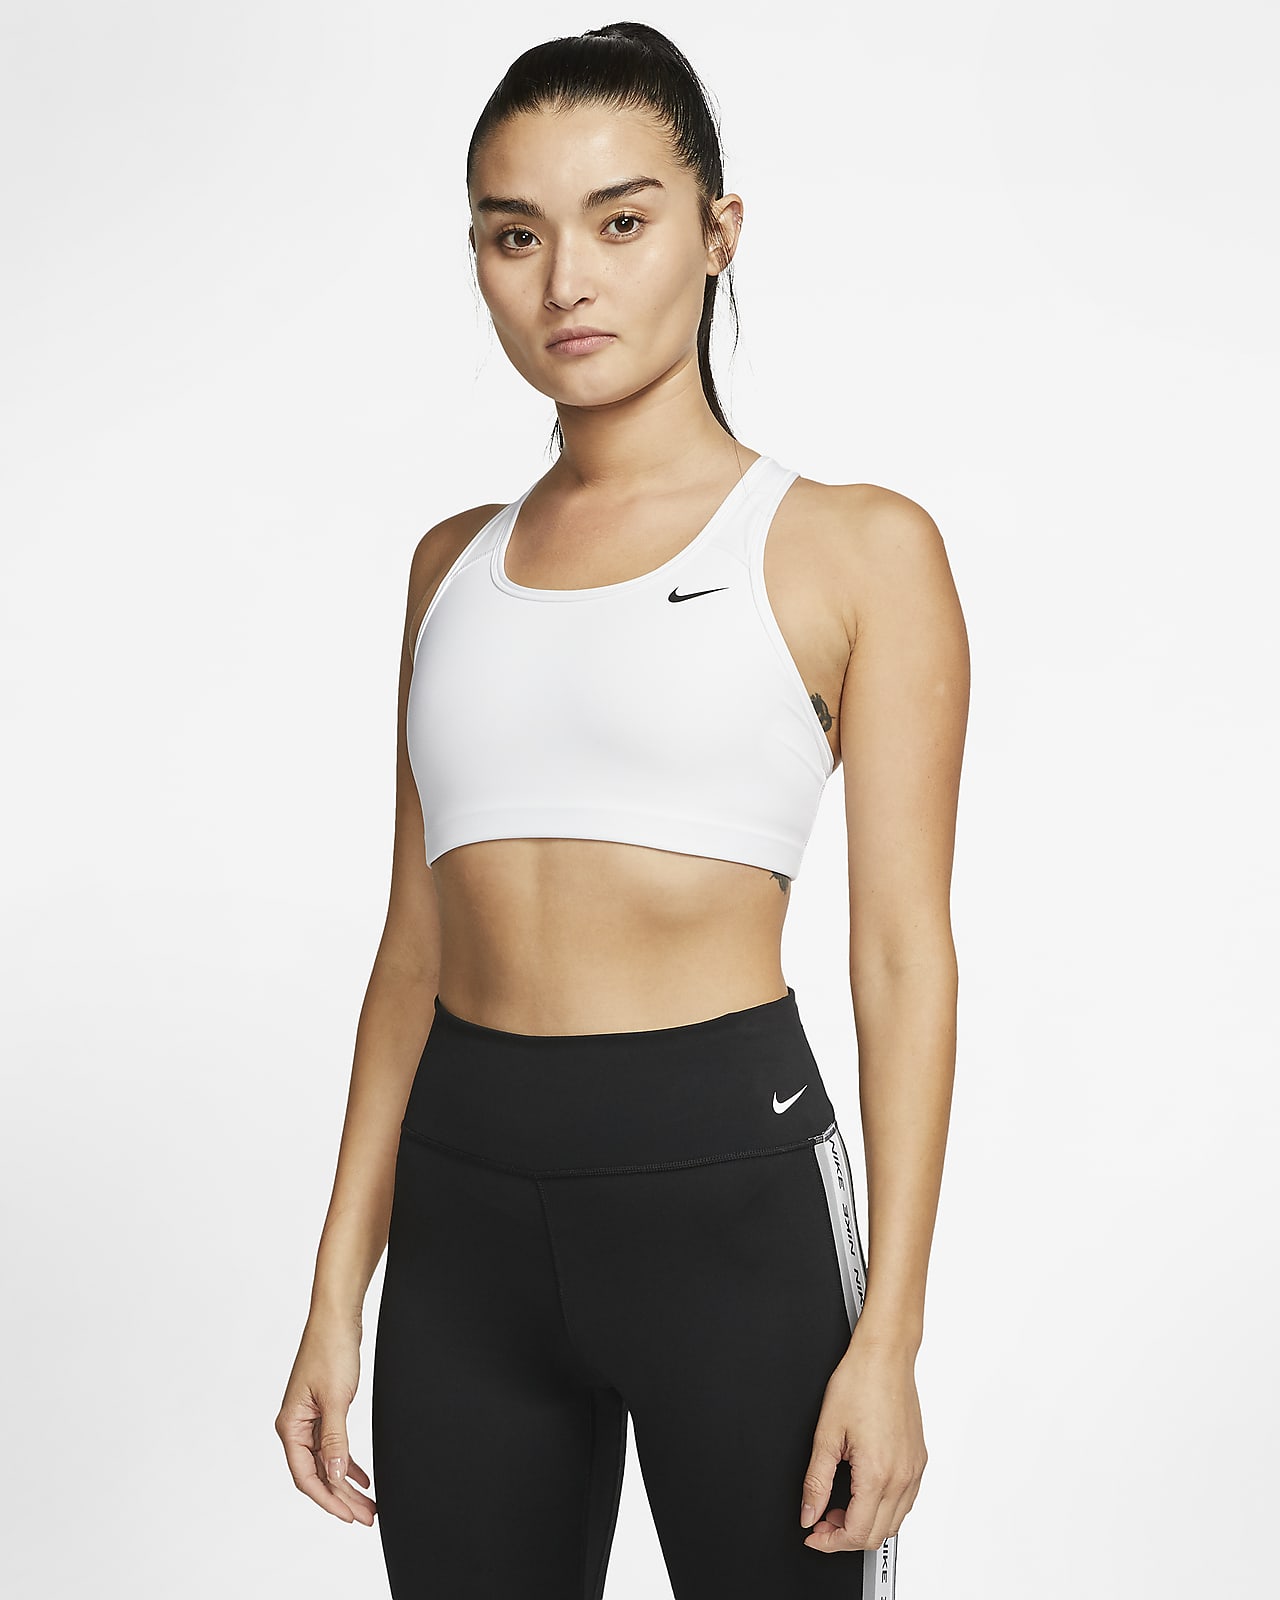 Ovadderad sport-BH Nike Swoosh med mediumstöd för kvinnor